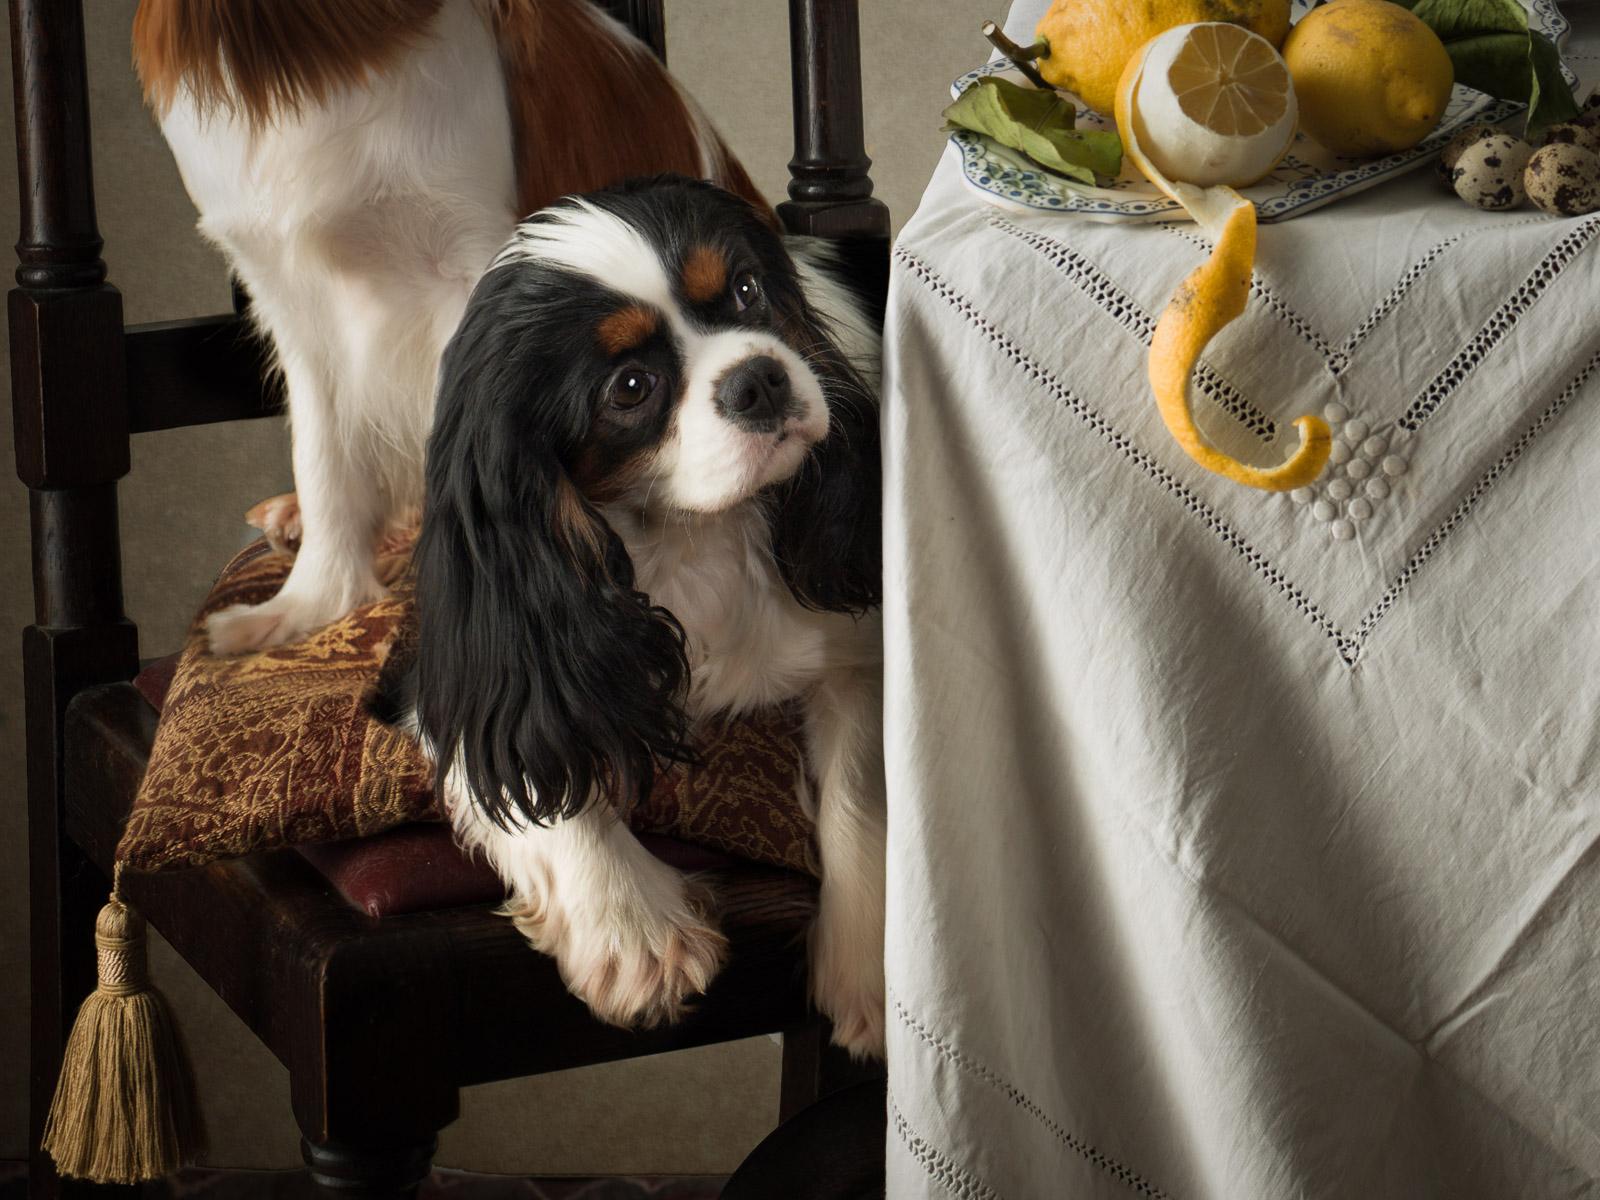 Niederländischer Hund #3 König Charles Spaniels – Tier, signiert, zeitgenössisch, limitierte Auflage – Photograph von Tim Platt